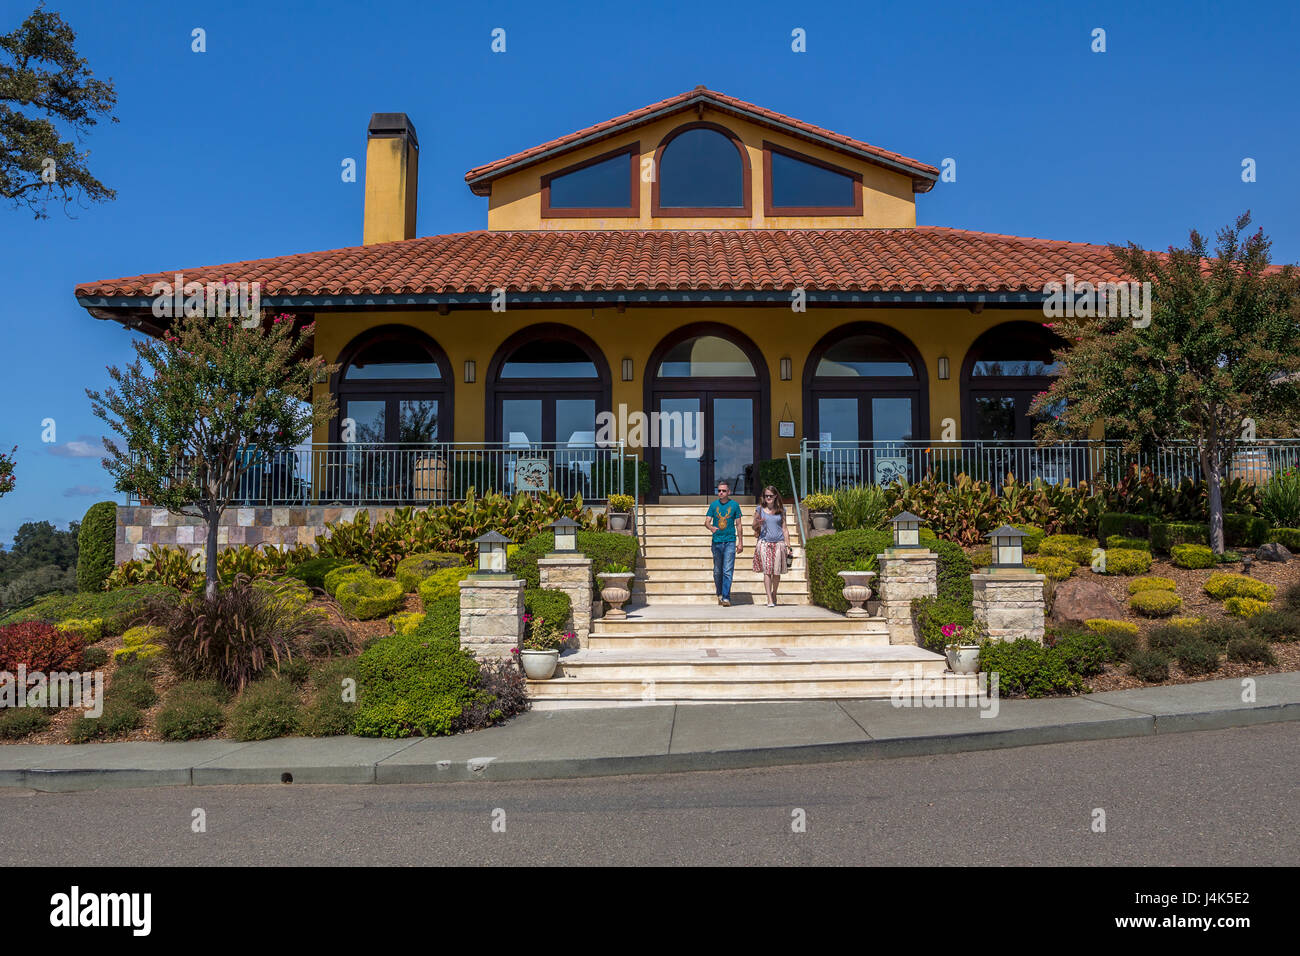 Salle de dégustation de style méditerranéen, entreprise vinicole Hanna, Healdsburg, Alexander Valley, Sonoma County, California, United States Banque D'Images